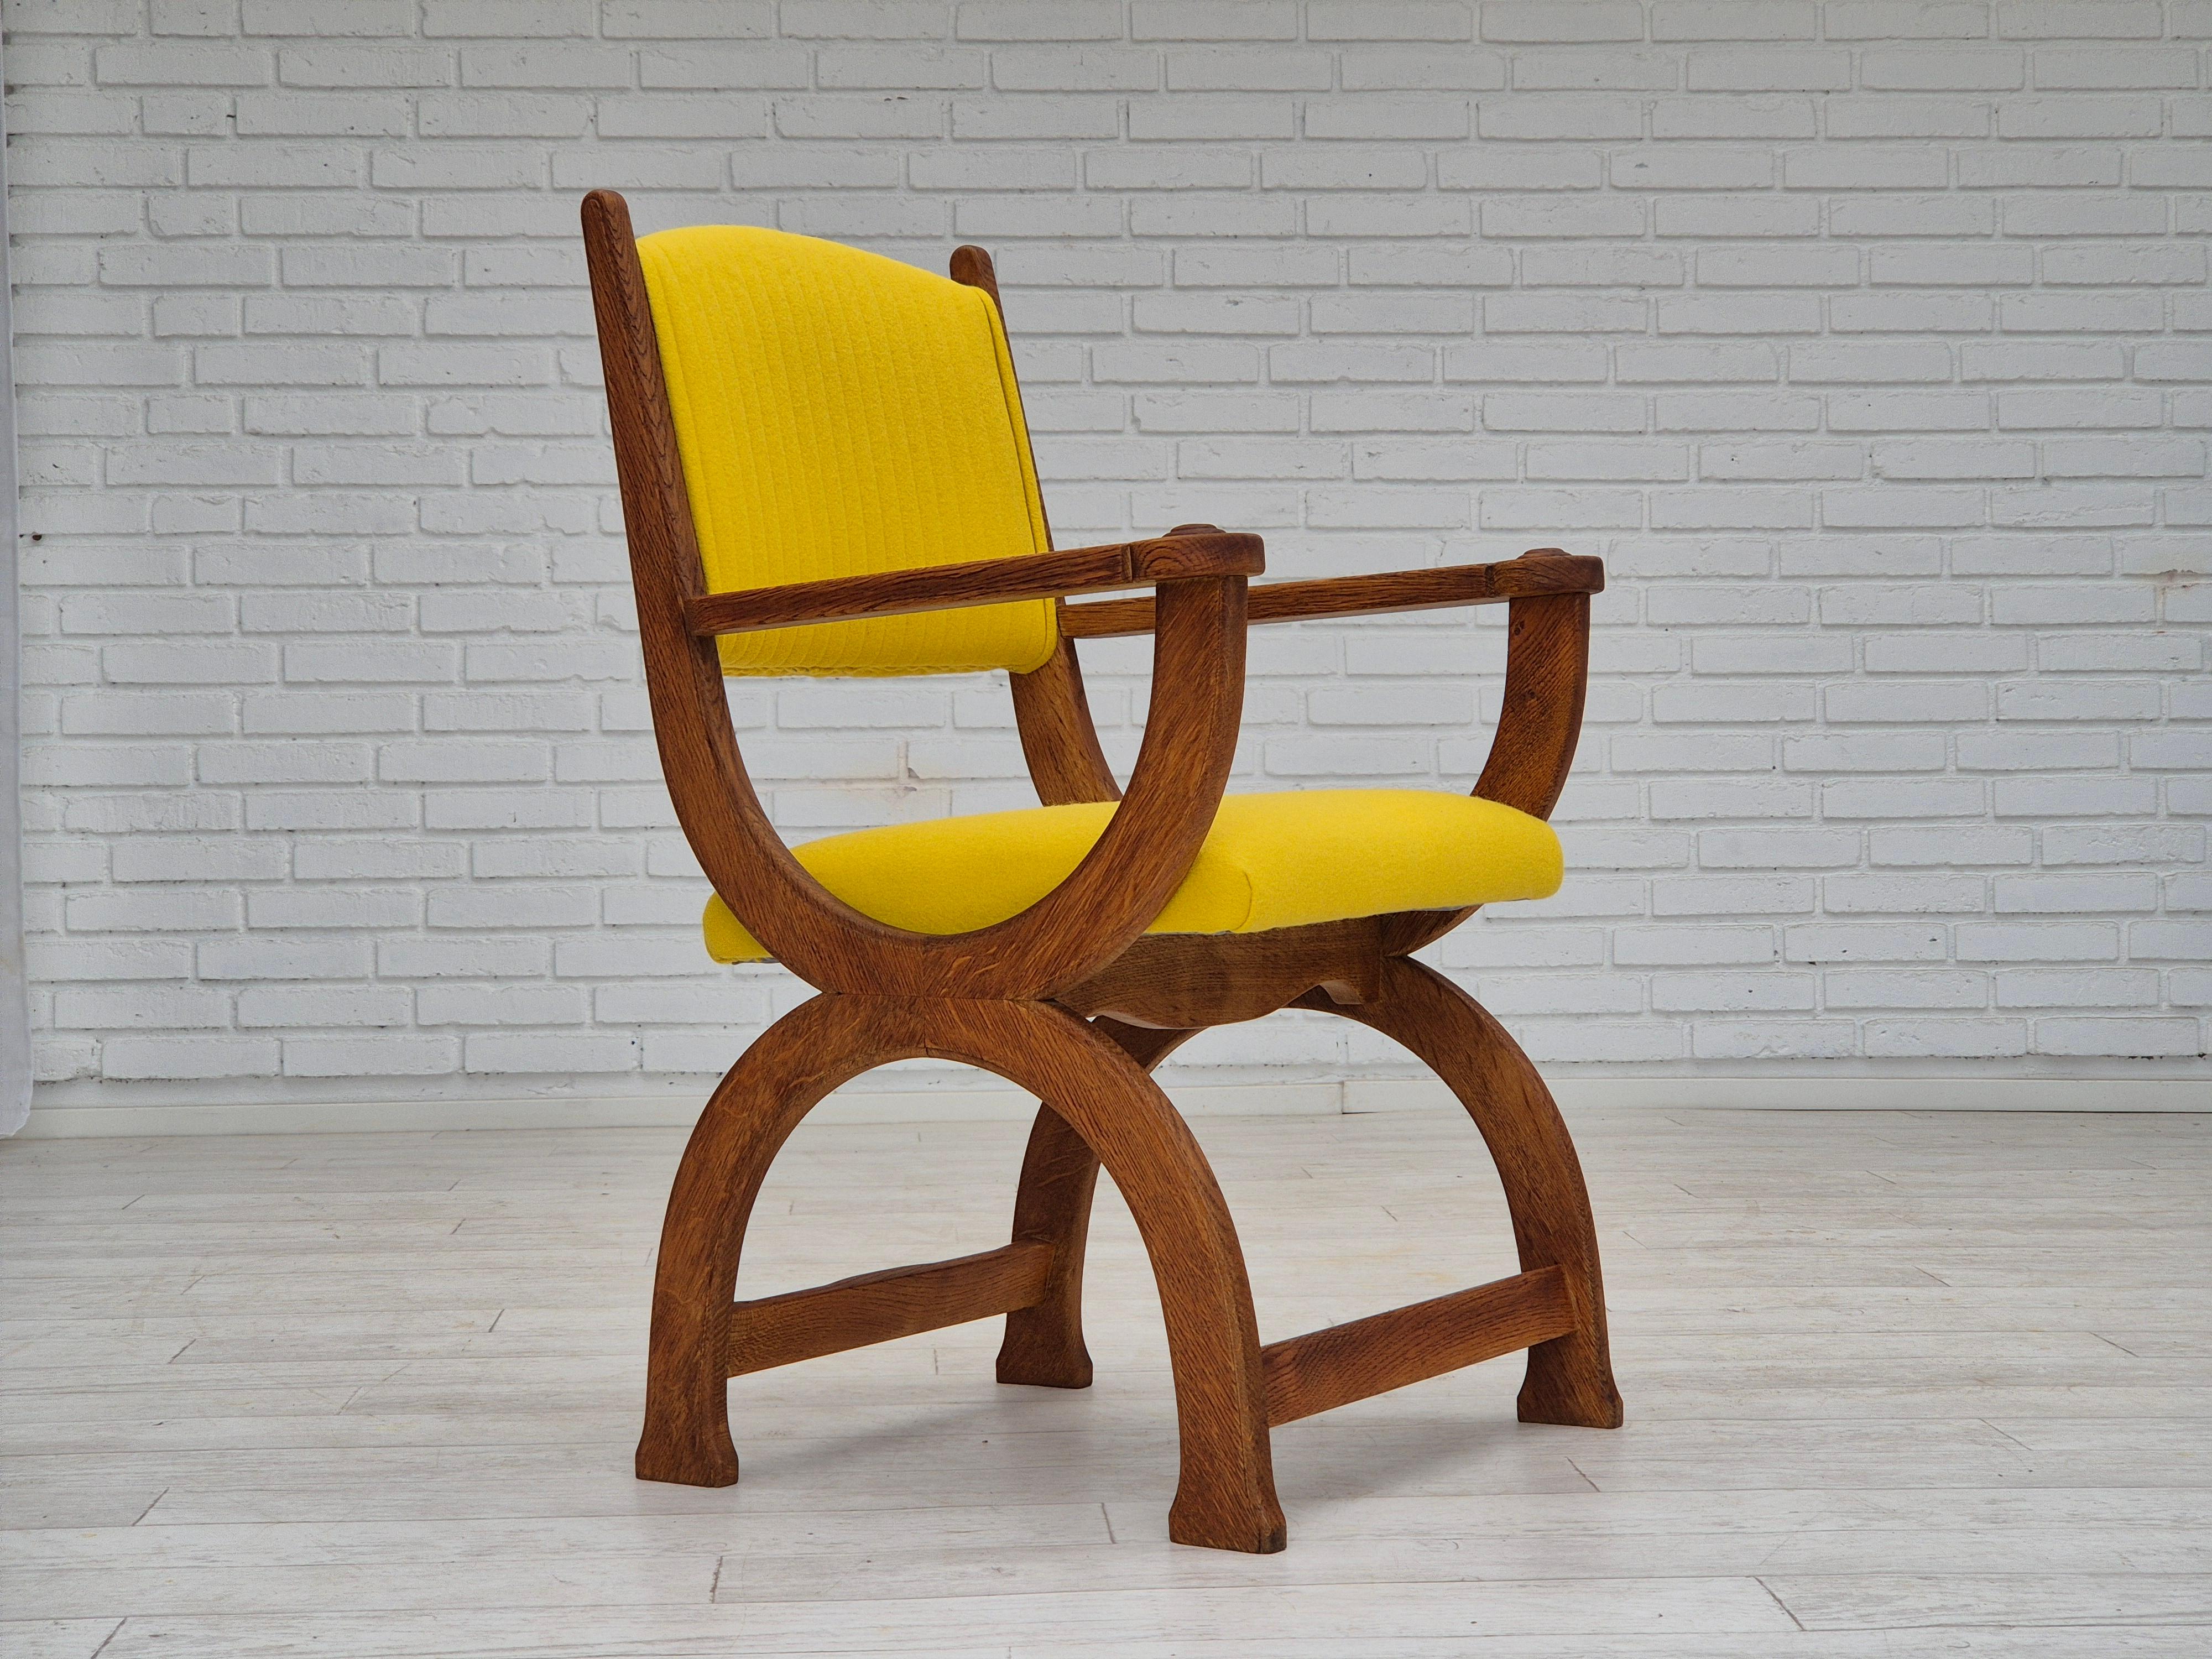 Komplett neu gepolsterter dänischer Sessel aus den 1950er Jahren. Gepolstert mit hochwertiger Gabriel-Möbelwolle. Erneuertes Eichenholz. Brandneue Polsterung. Hergestellt von einem dänischen Möbelhersteller um 1955. Neu gepolstert von